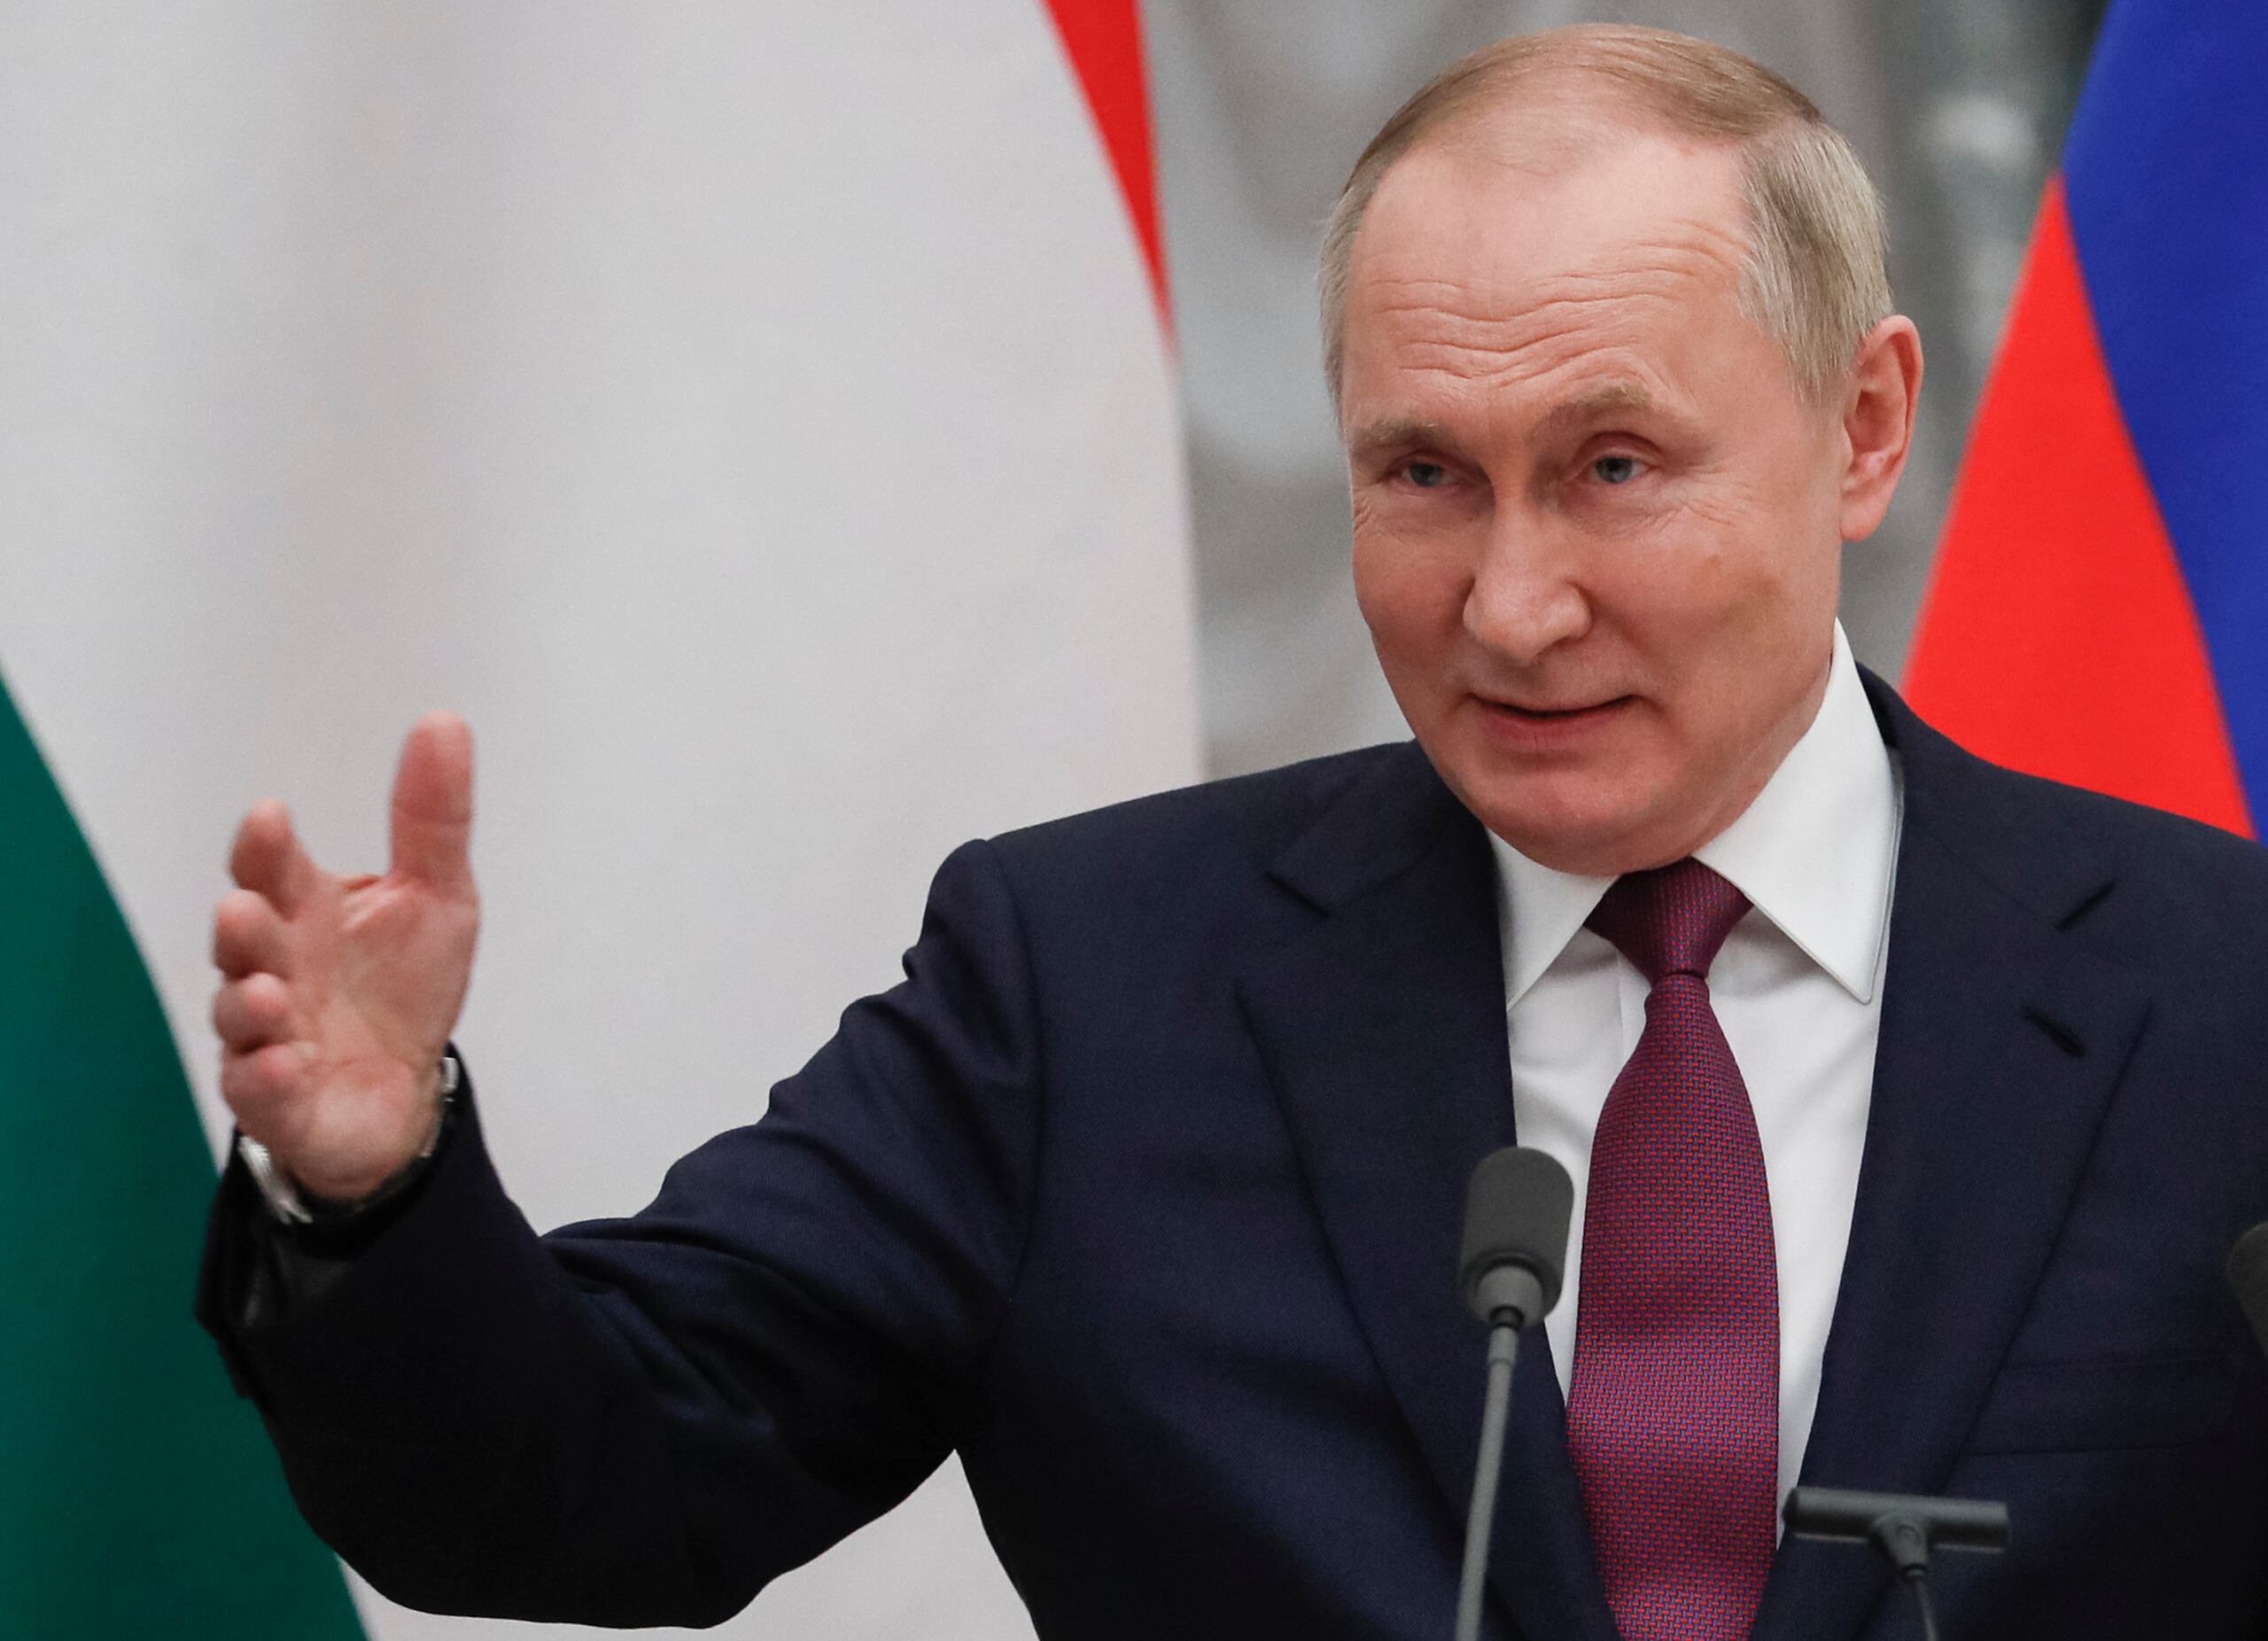 El presidente Putin dijo el martes que aun estudia la respuesta de Estados Unidos y la OTAN a las demandas de seguridad planteadas por Rusia. 